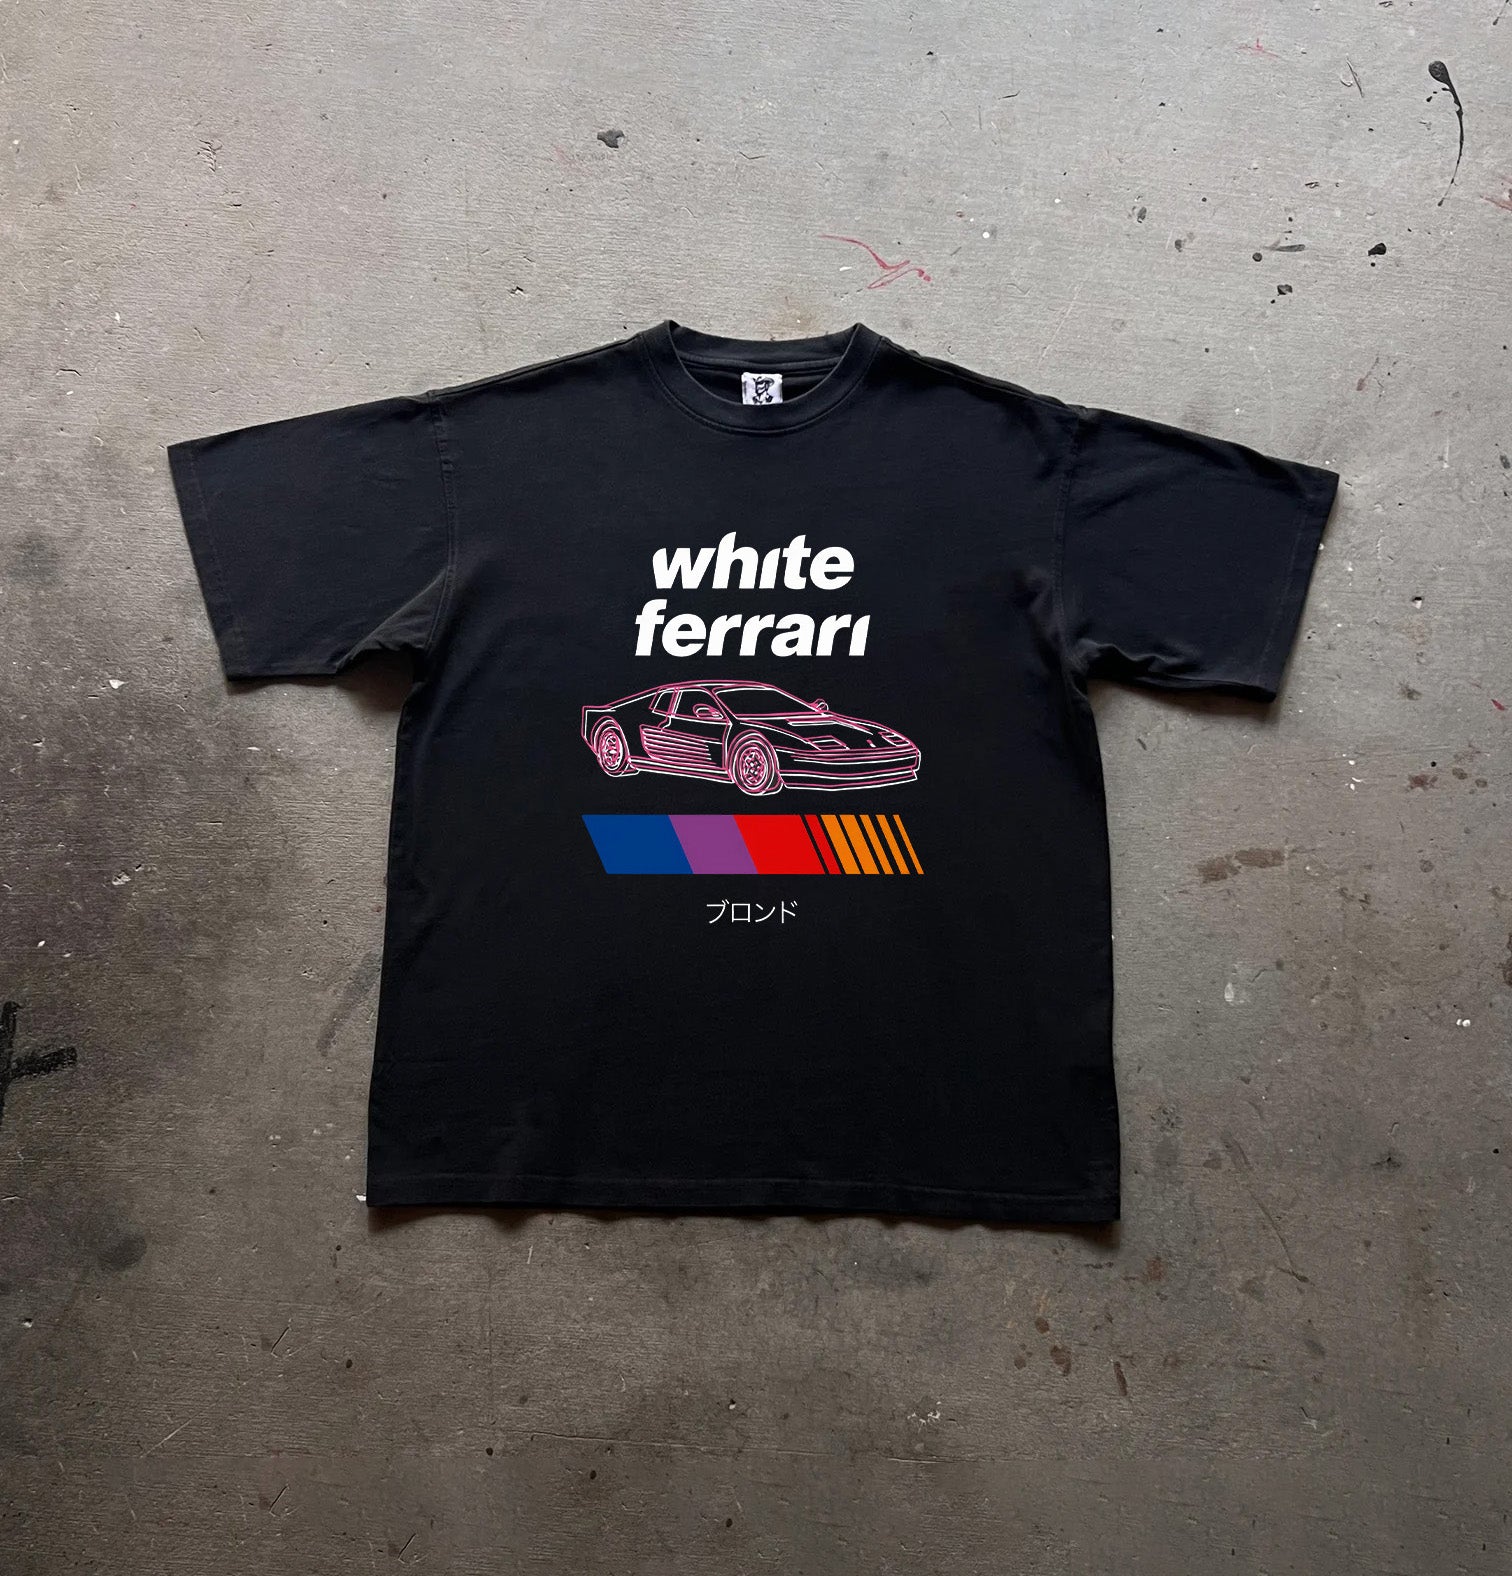 FRANK OCEAN "White ferrari" Oversized T-shirt